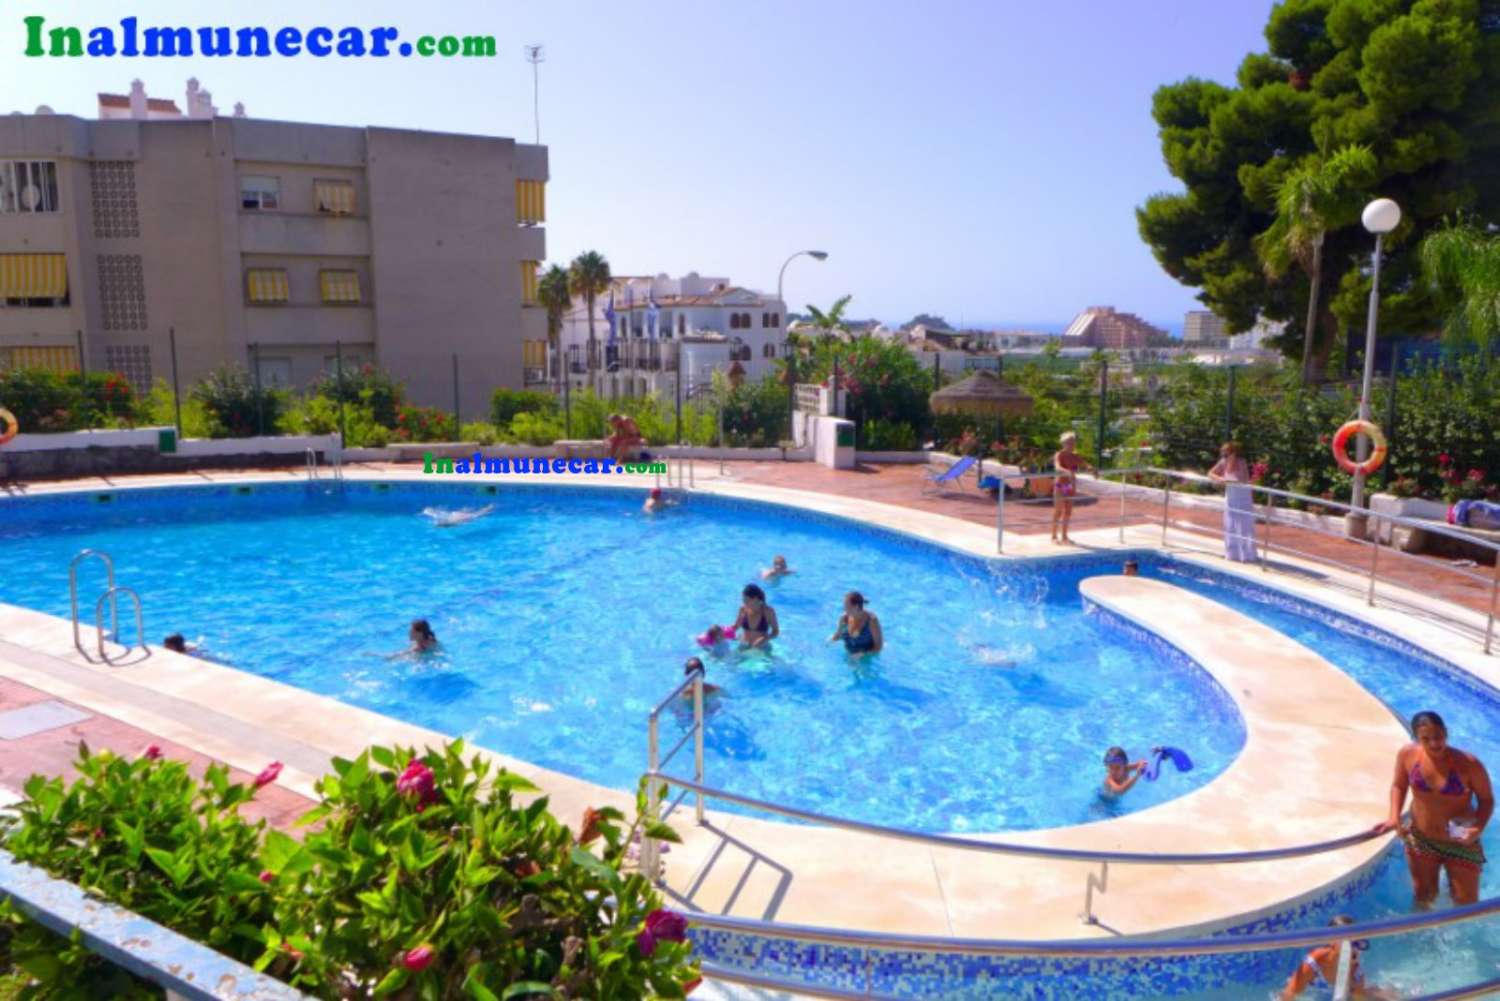 Lejlighed til salg i Almuñecar med pool og fælles parkering